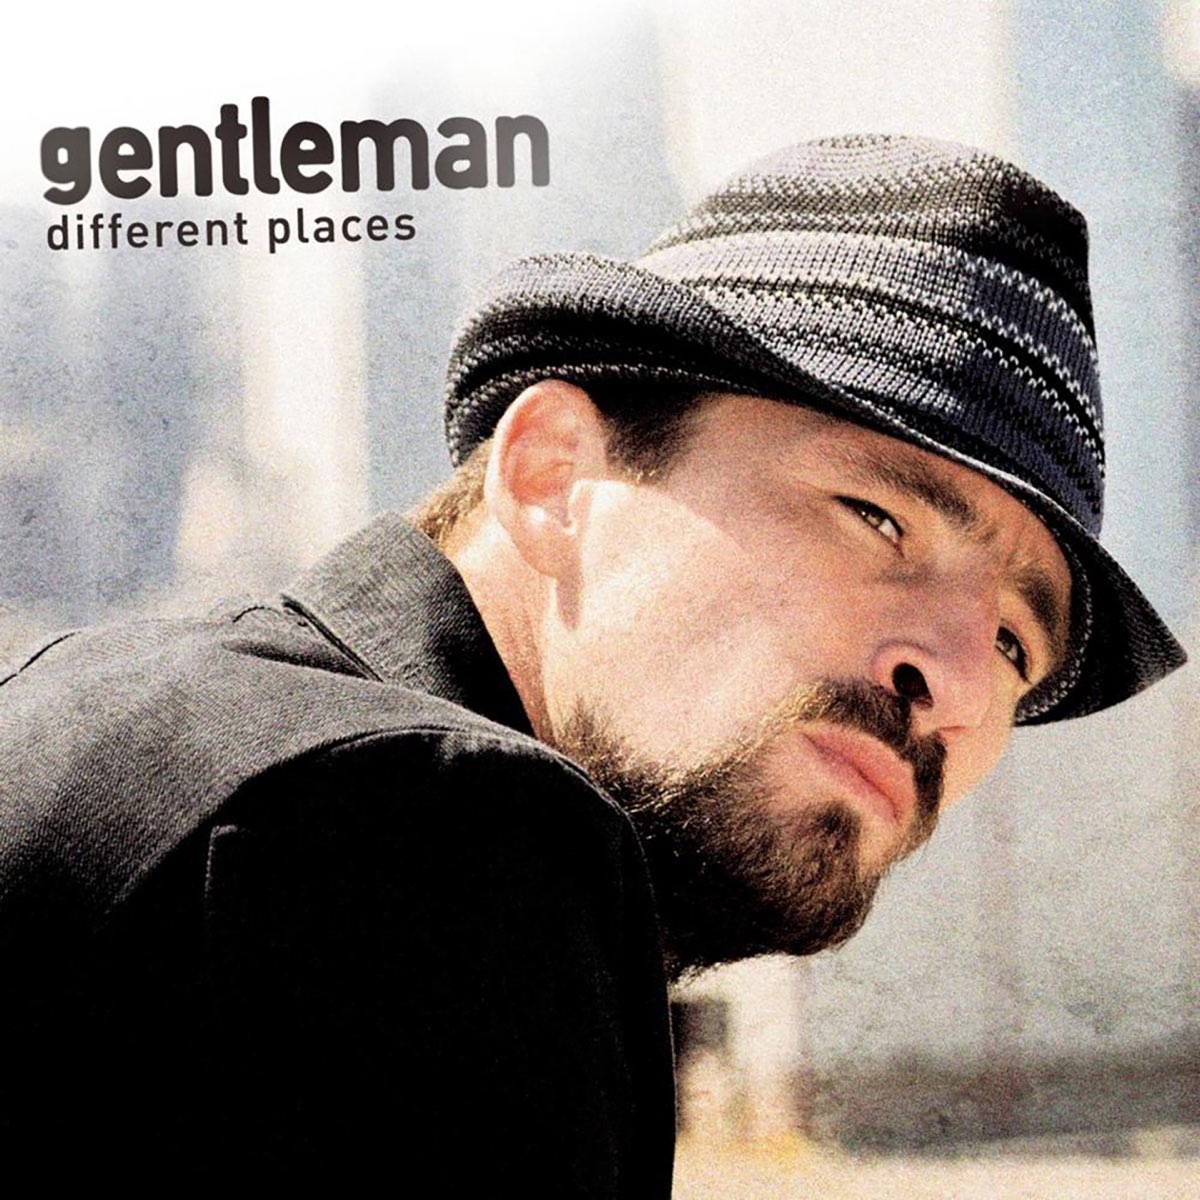 Слушать музыку джентльмен. Gentleman - 2007 - different places (Ep). Песня Gentleman.